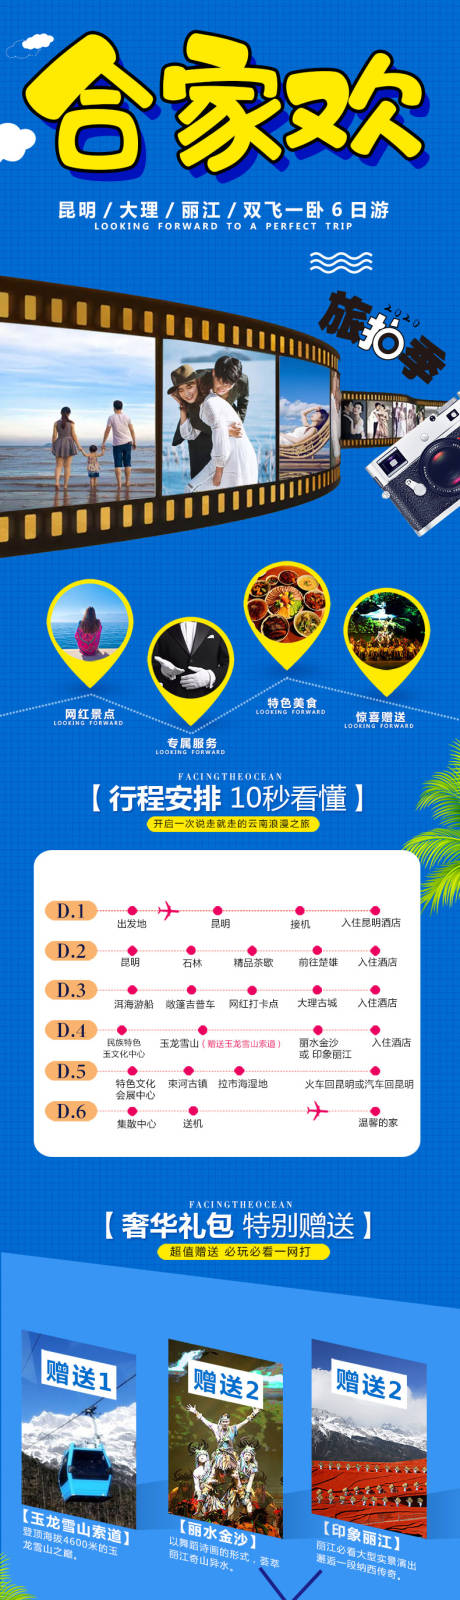 云南旅游详情页设计